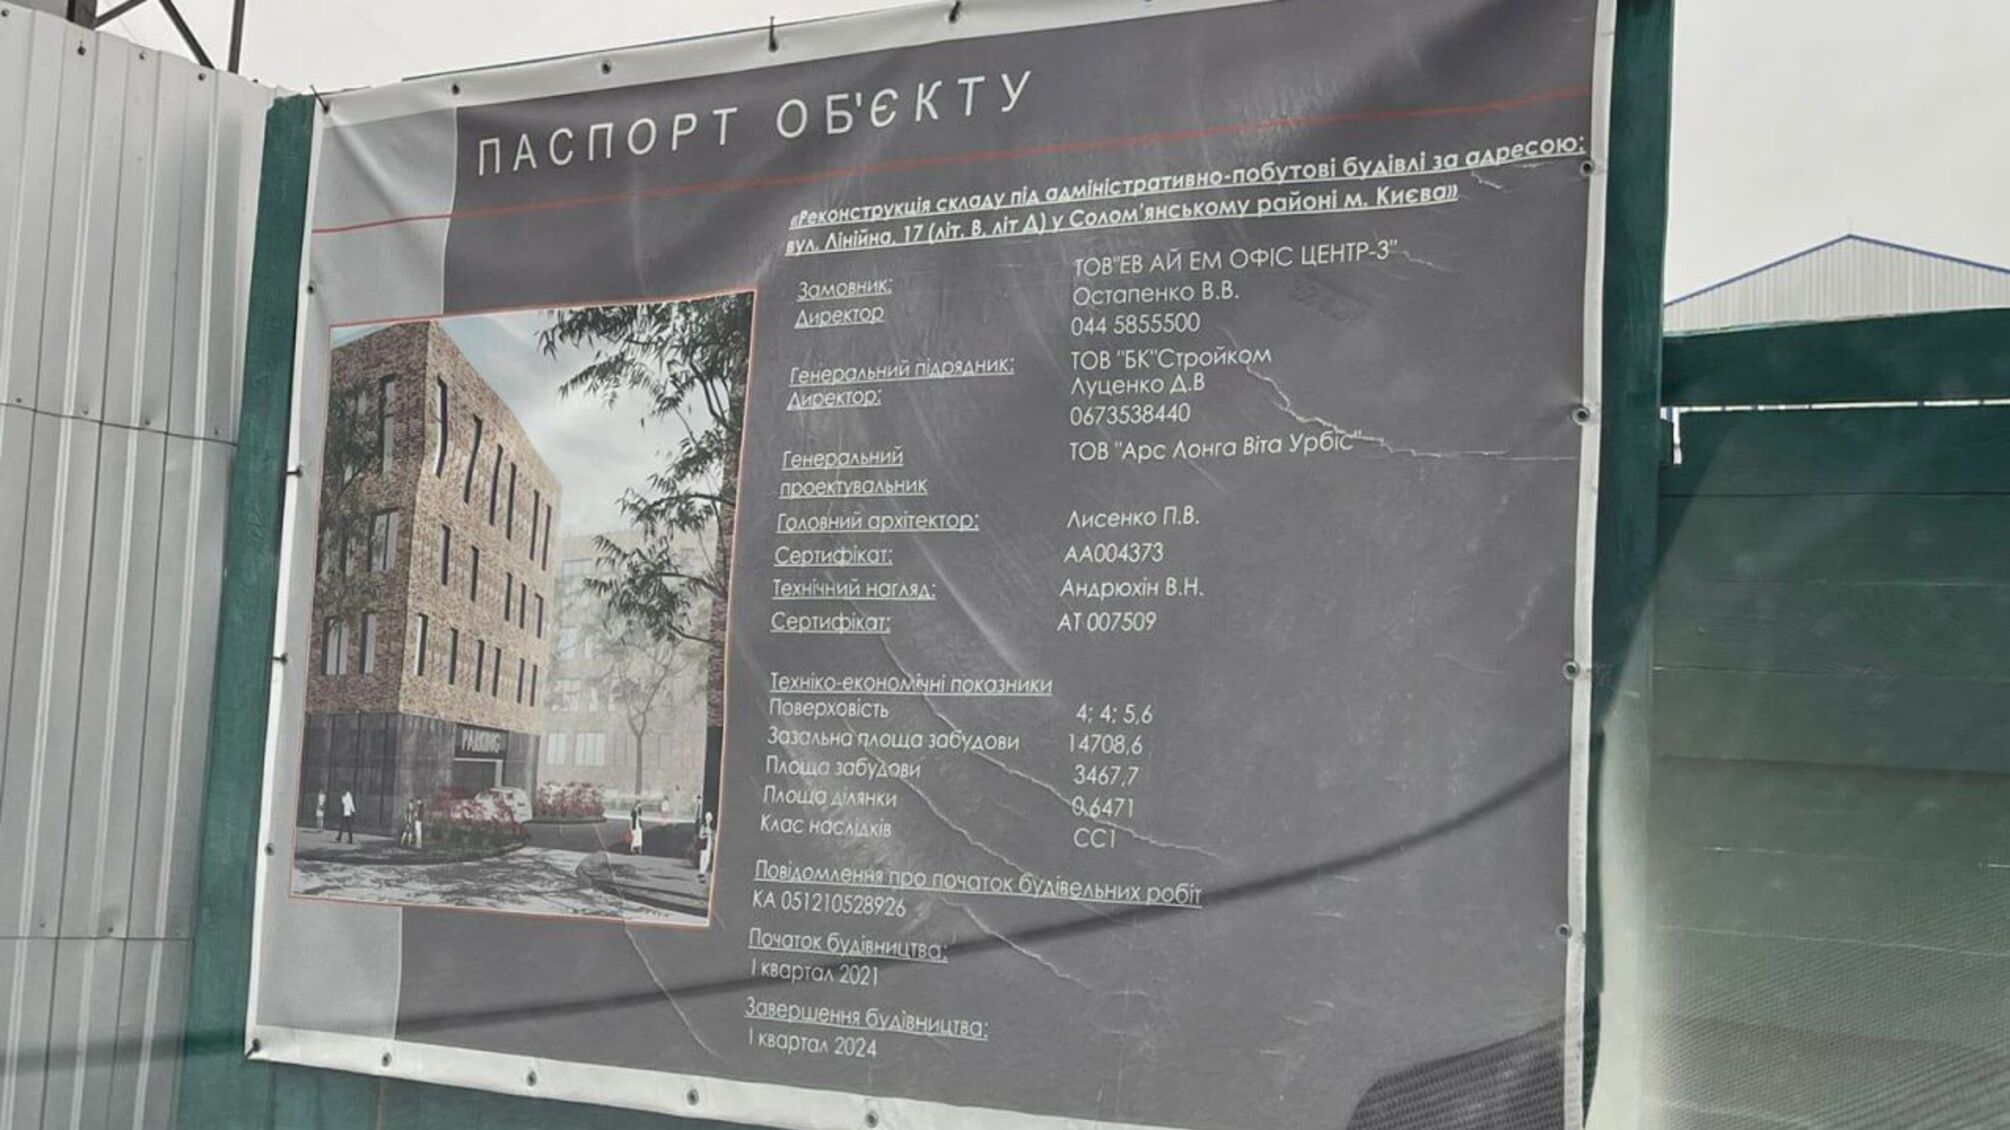 Под видом реконструкции: фирма подсанкционного Ермолаева и коммунистки Калетник строит сомнительное здание на Соломенке